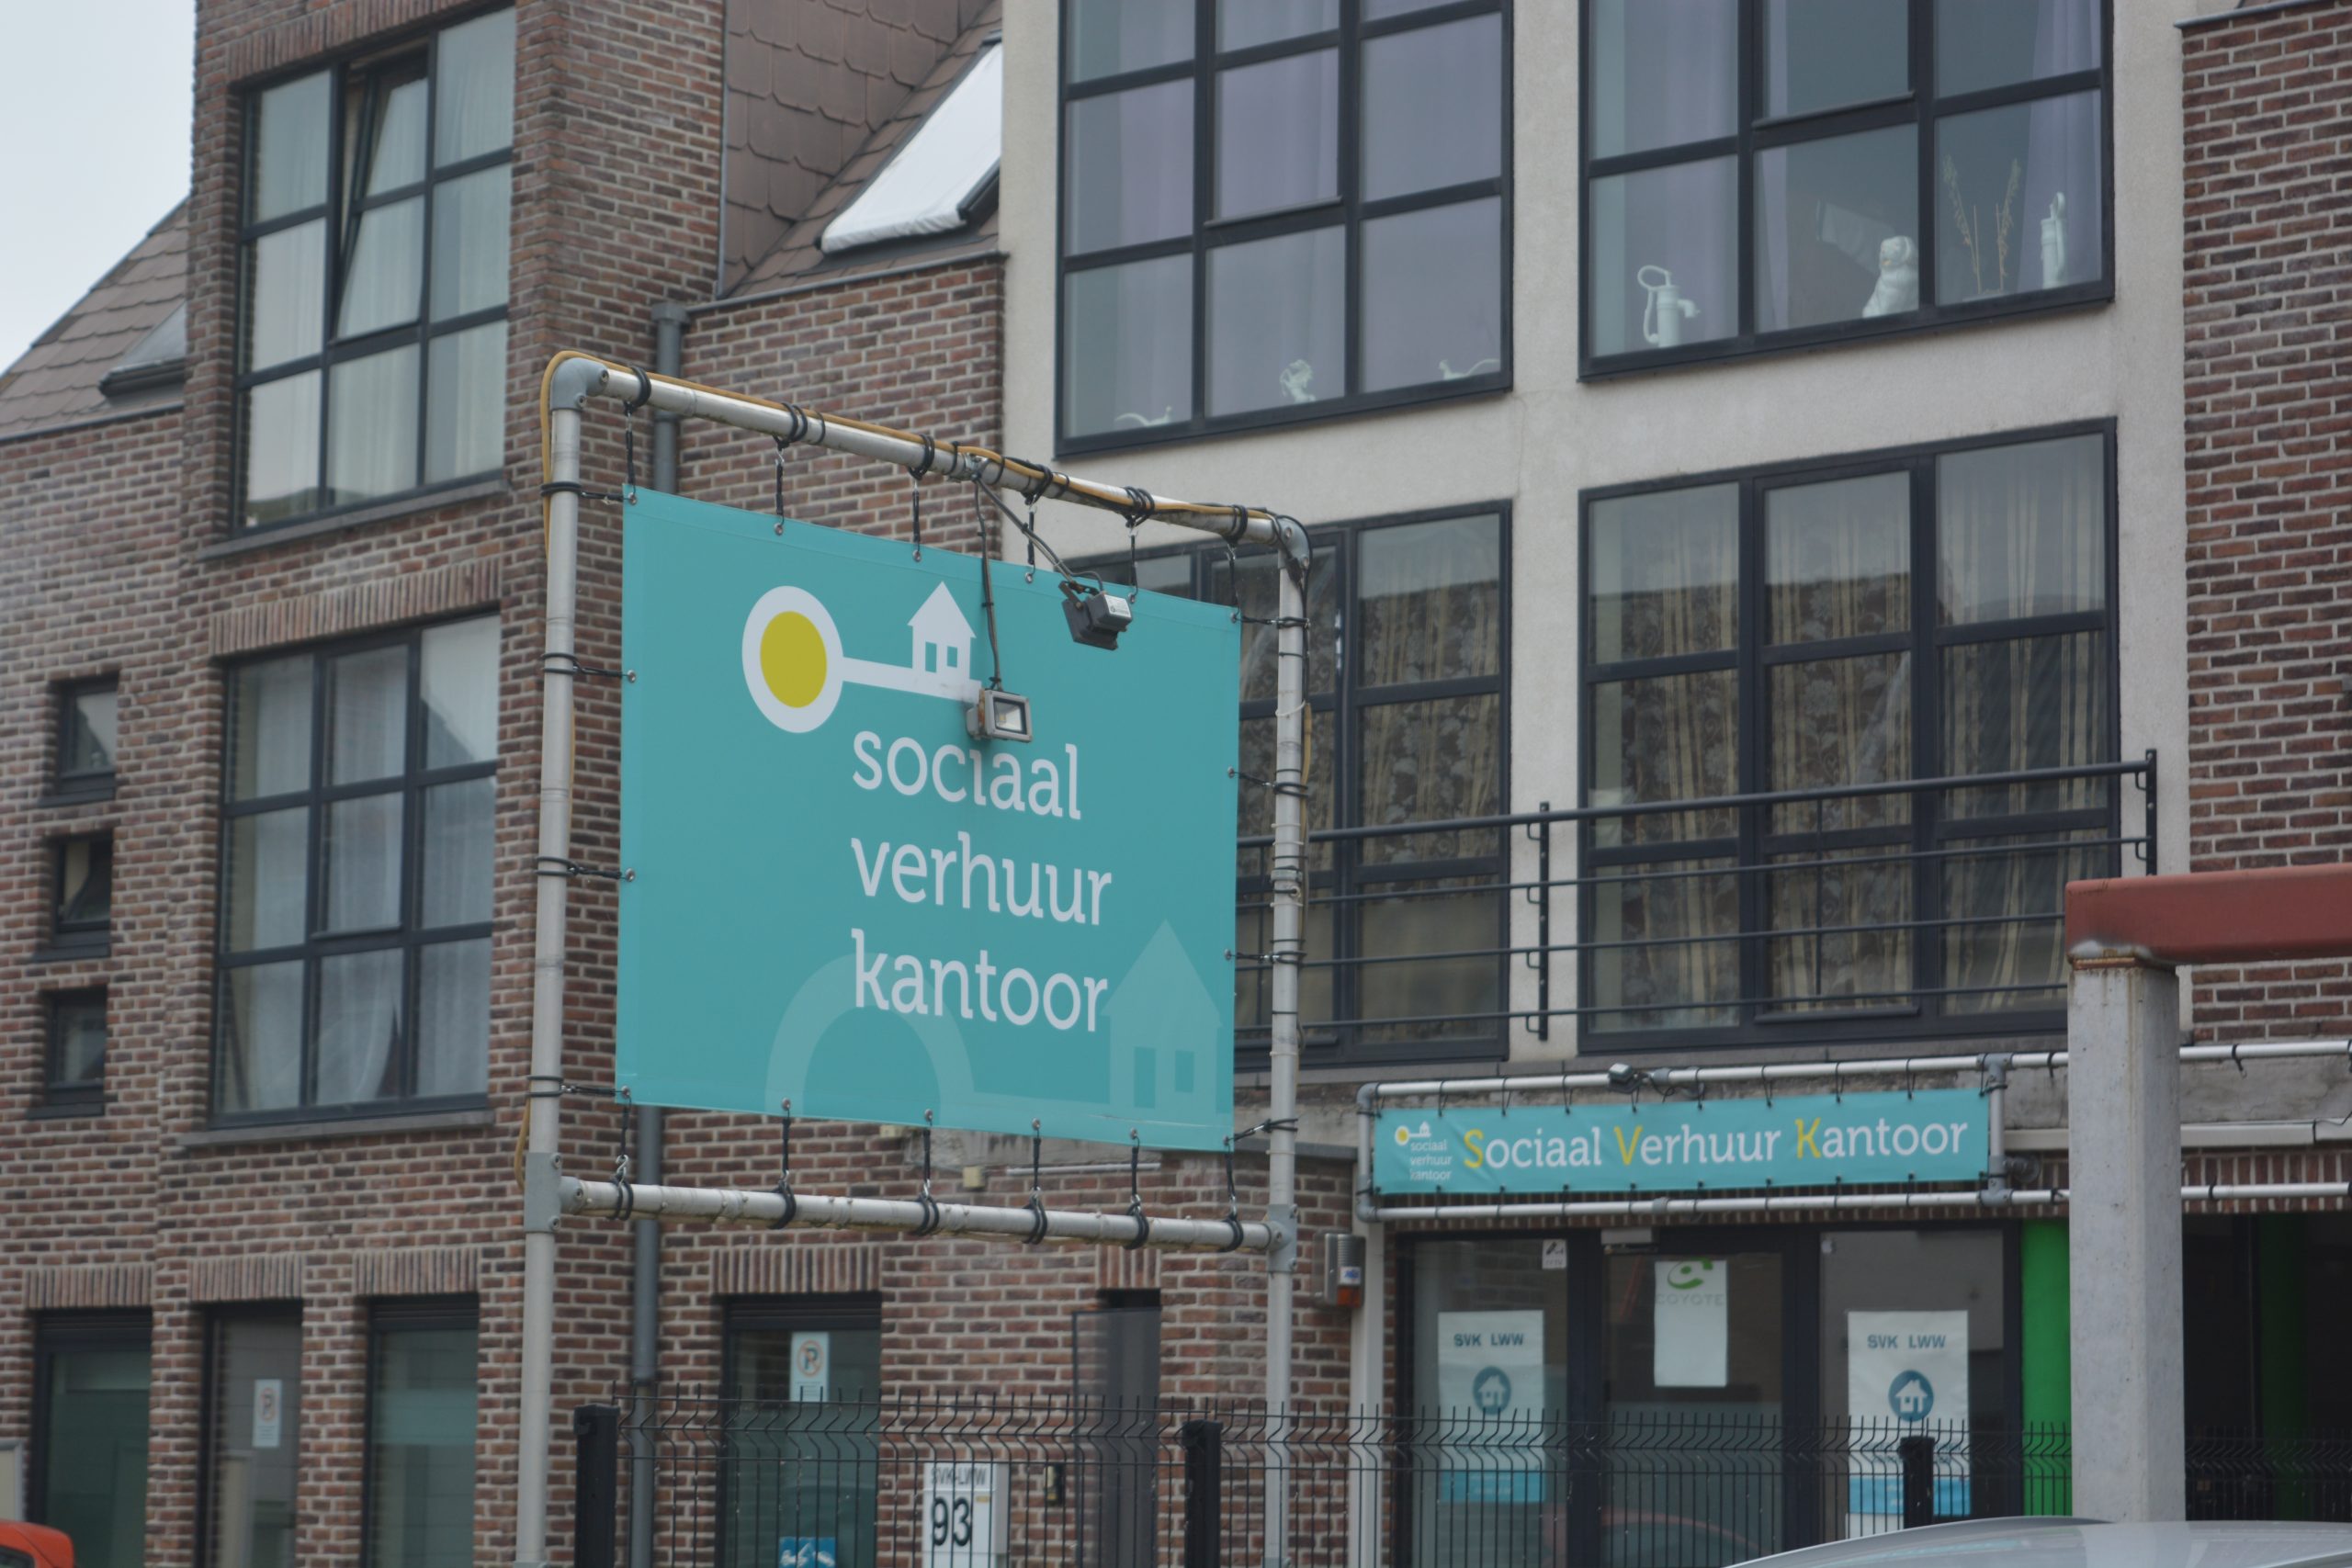 Sociaal verhuurkantoor verhuist van Wichelen naar Wetteren